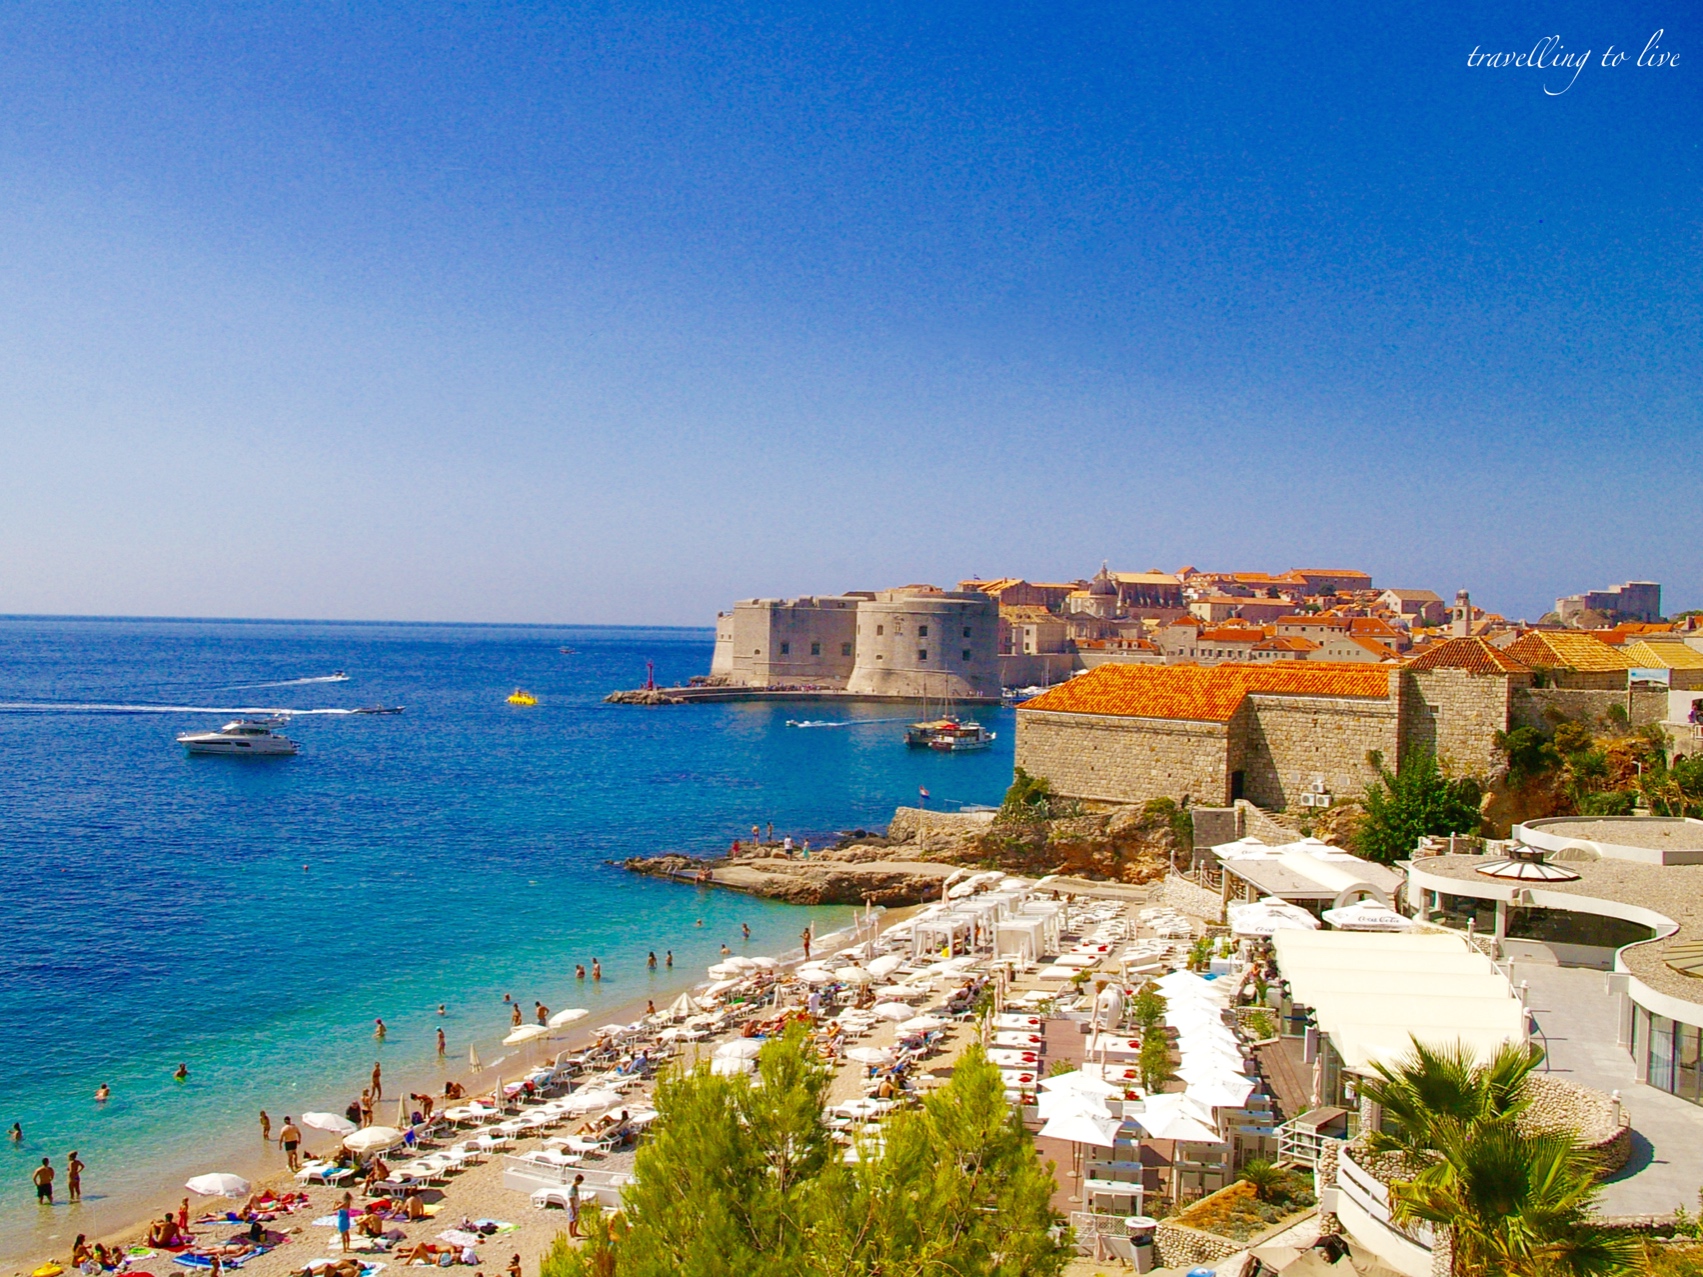 Vistas del casco antiguo de Dubrovnik desde una playa paradisíaca